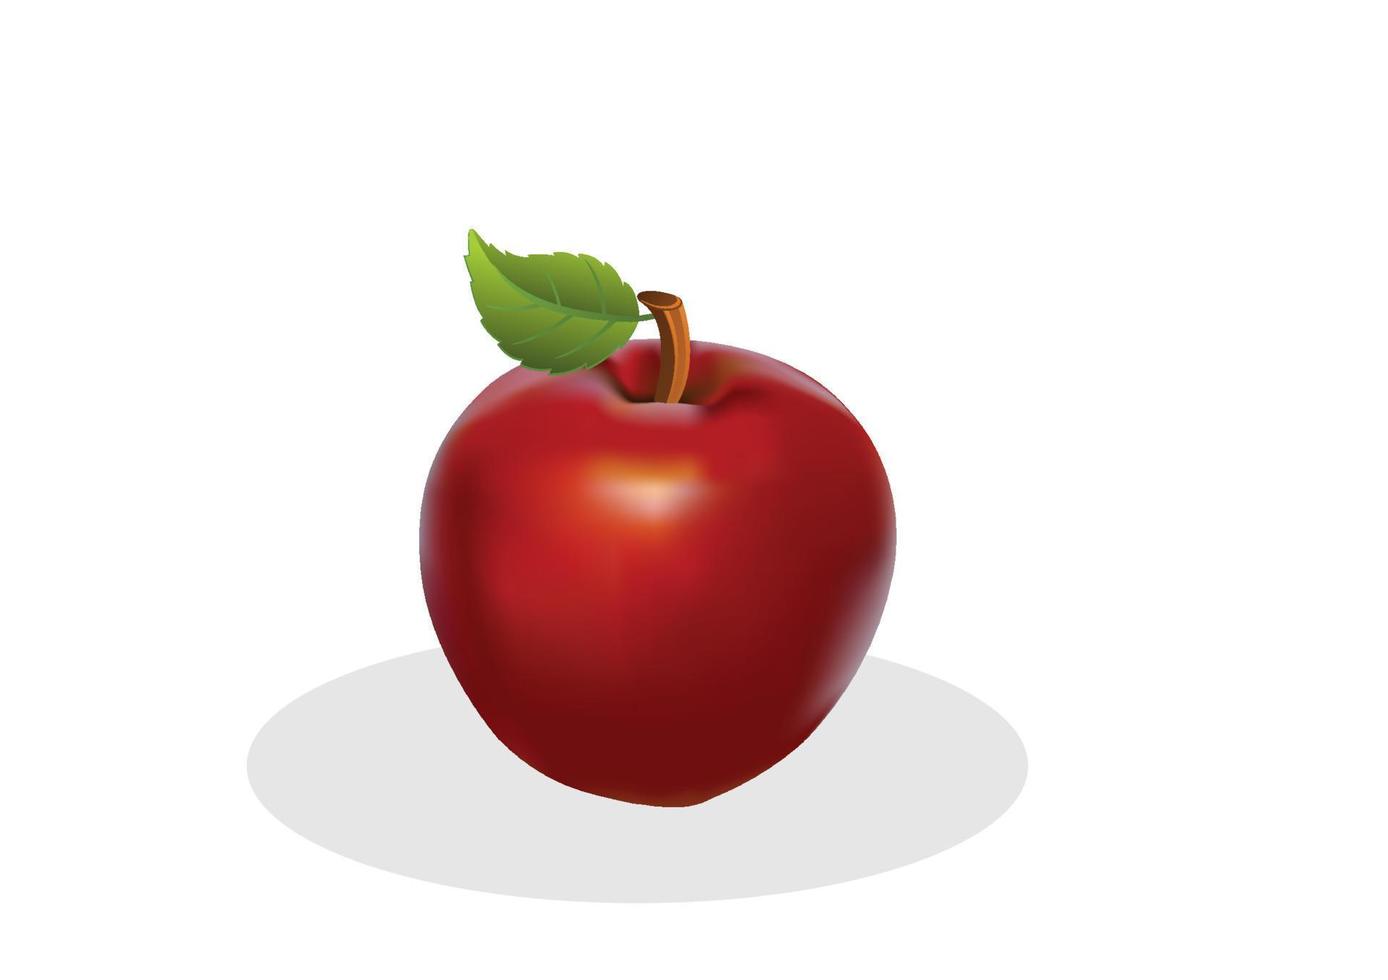 leuchtend roter Apfel mit grünem Blattdesign isoliert auf weißem Hintergrund, flacher Stil-Cartoon-Illustrationsvektor vektor